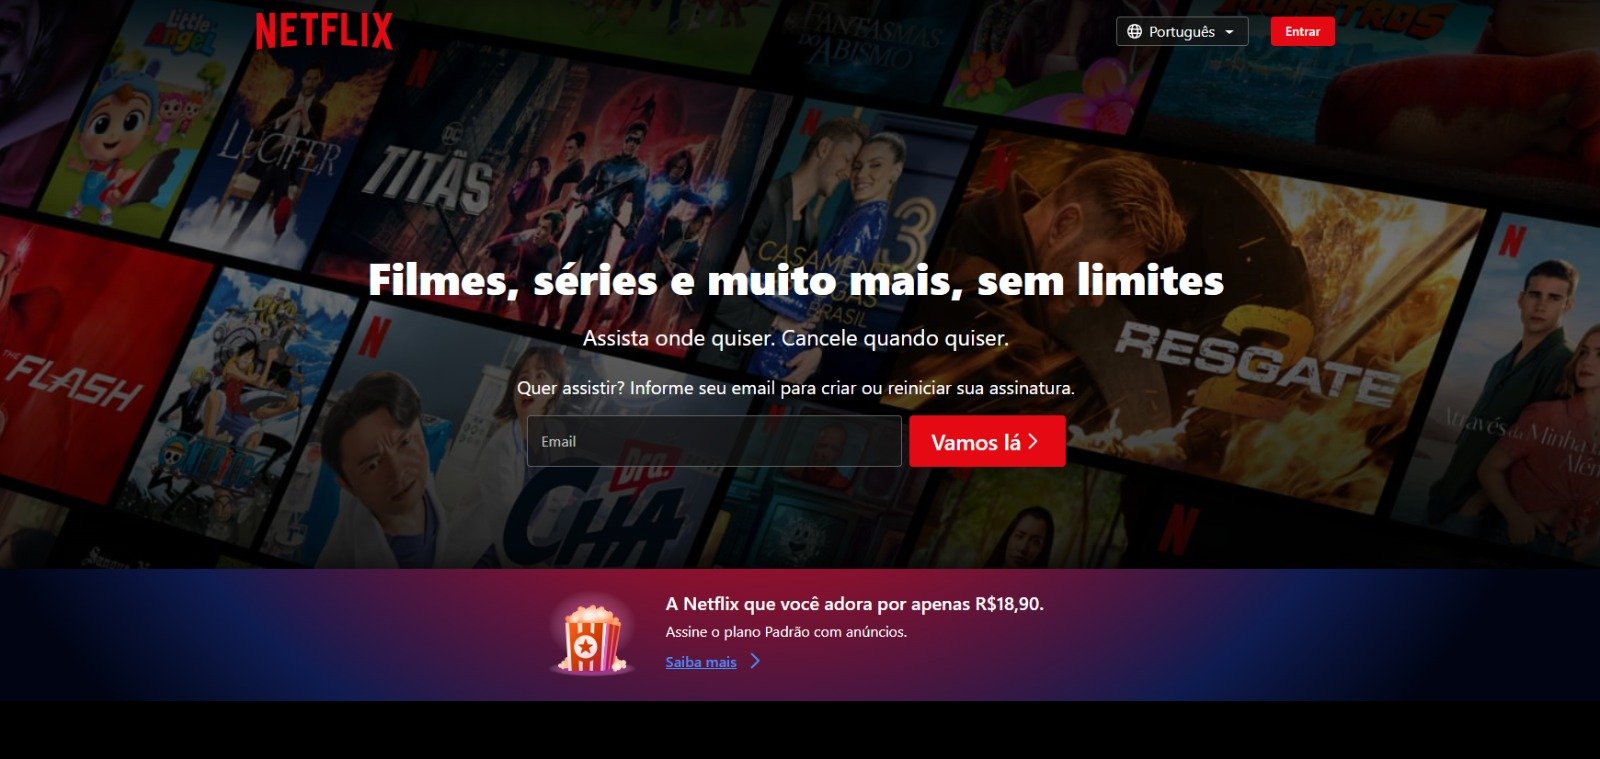 O cronograma da plataforma prevê lançamentos até 2024 - Foto: Reprodução/Netflix Brasil